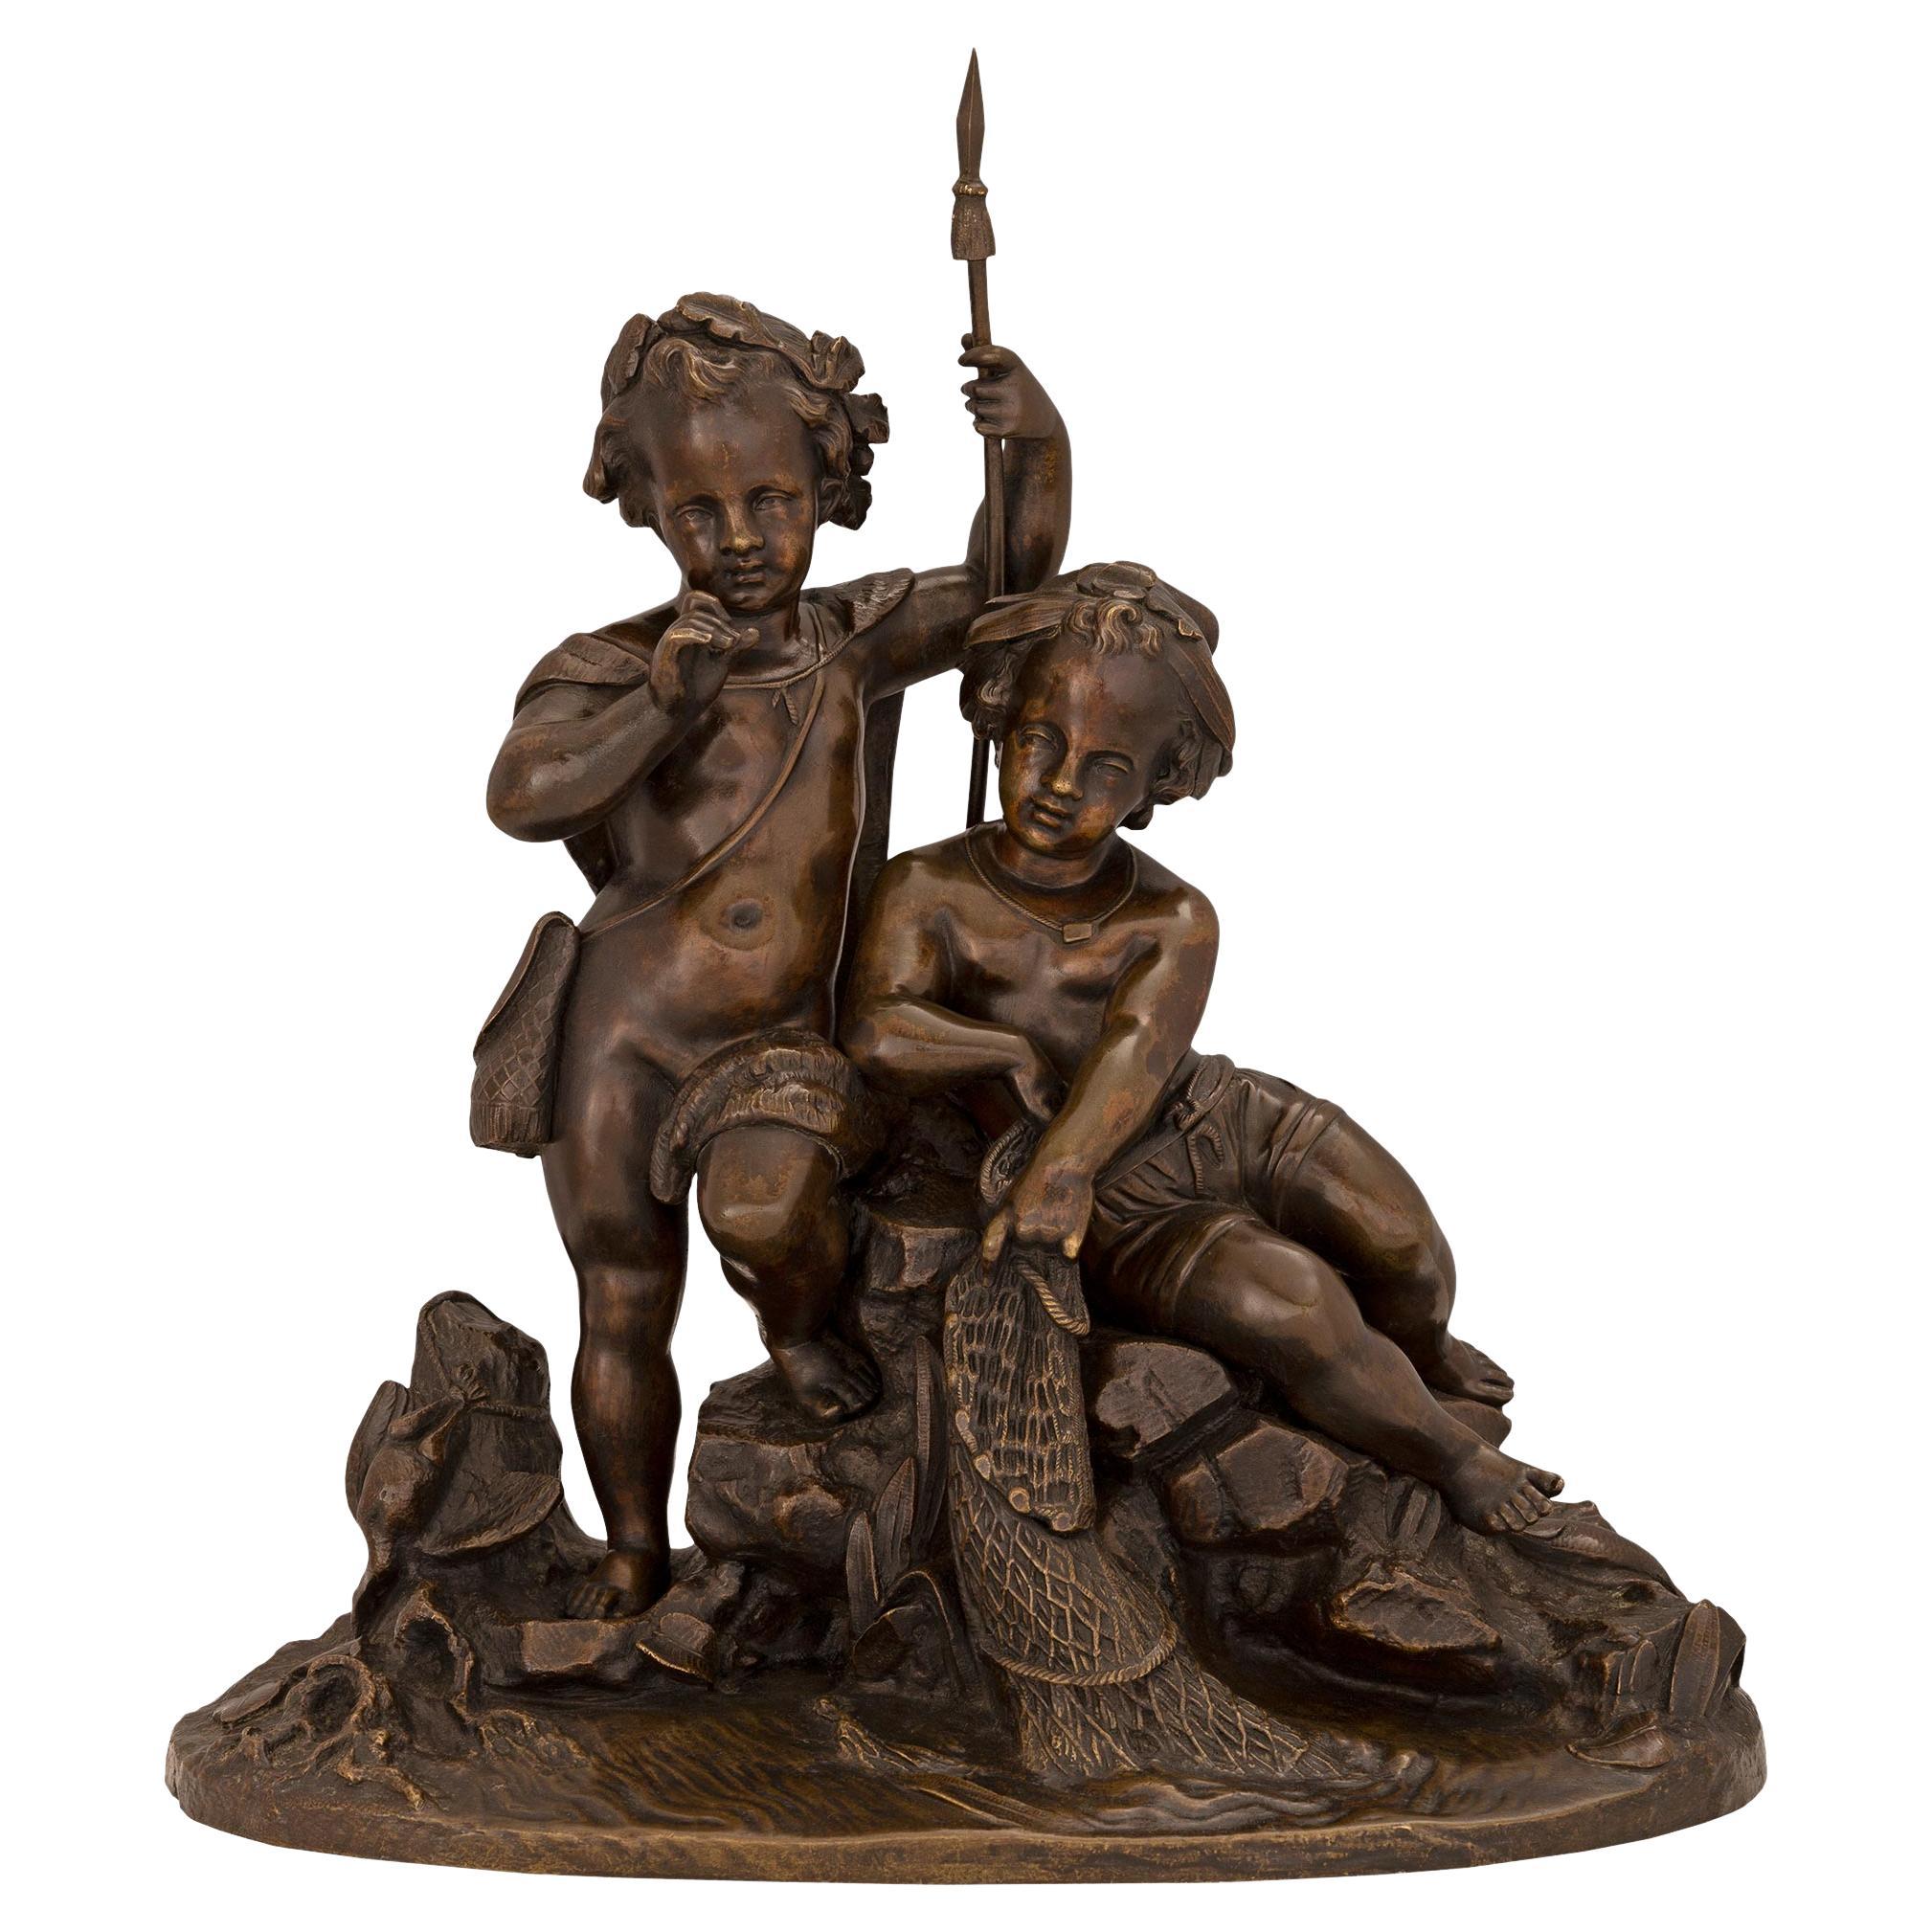 Patinierte Bronzestatue zweier junger Jungen beim Fischen, 19. Jahrhundert